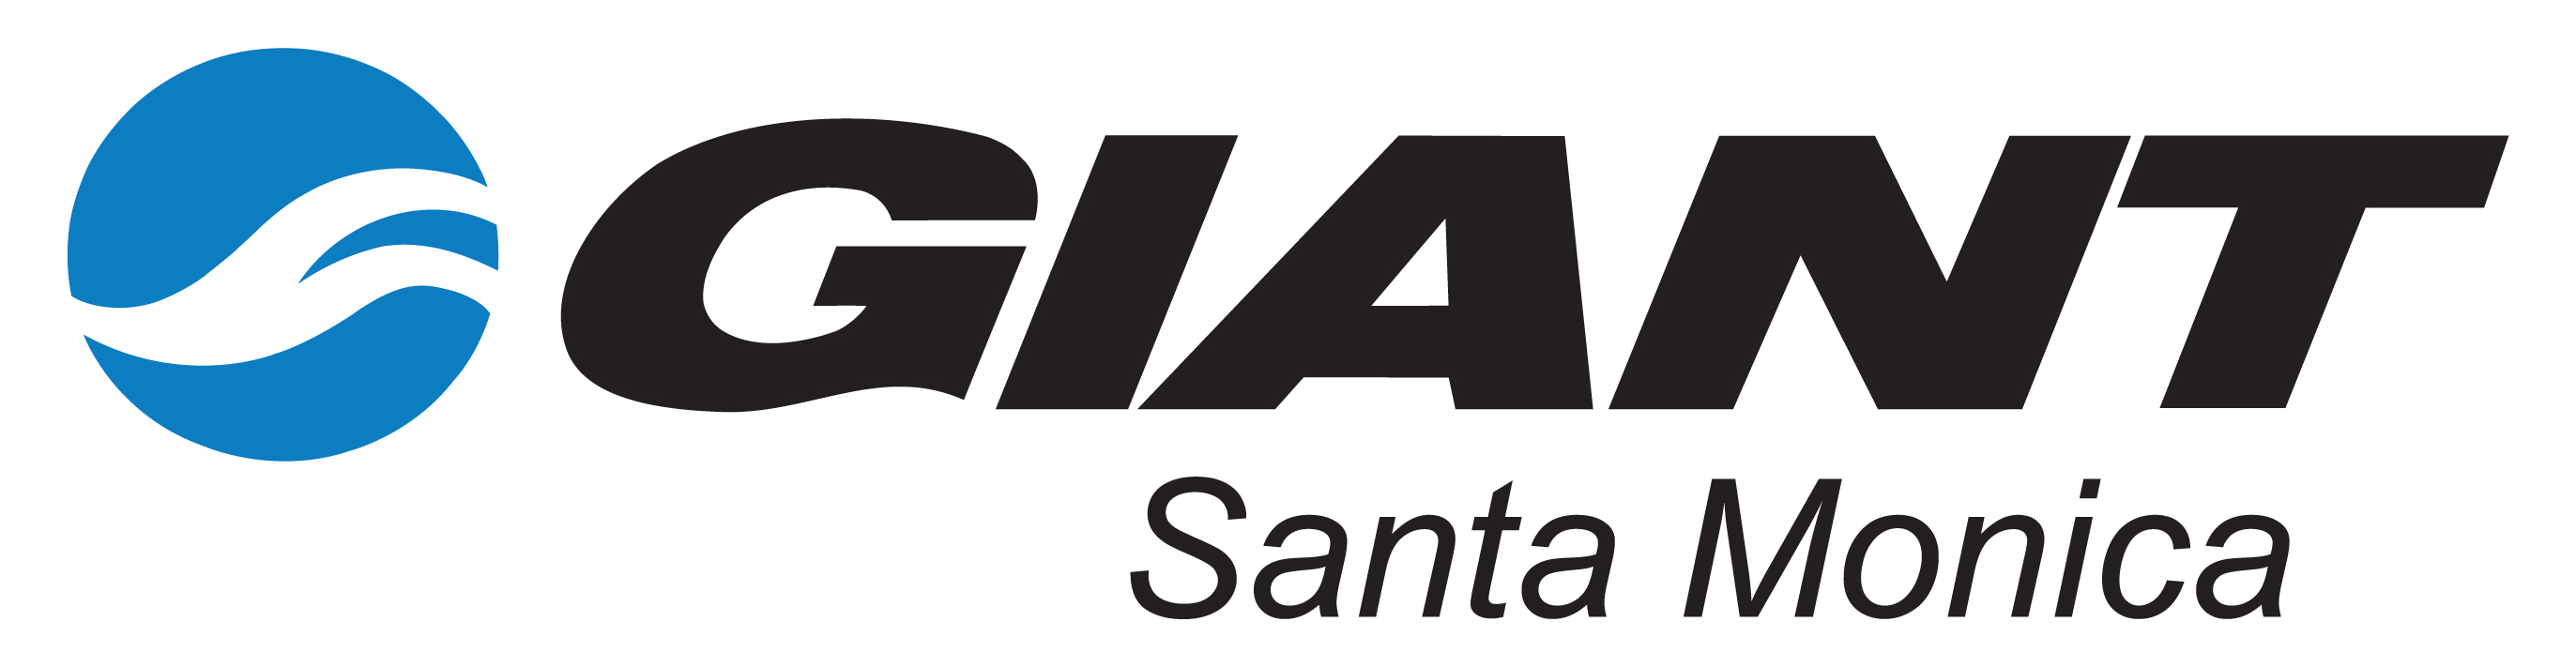 giant_sm_logo.jpg